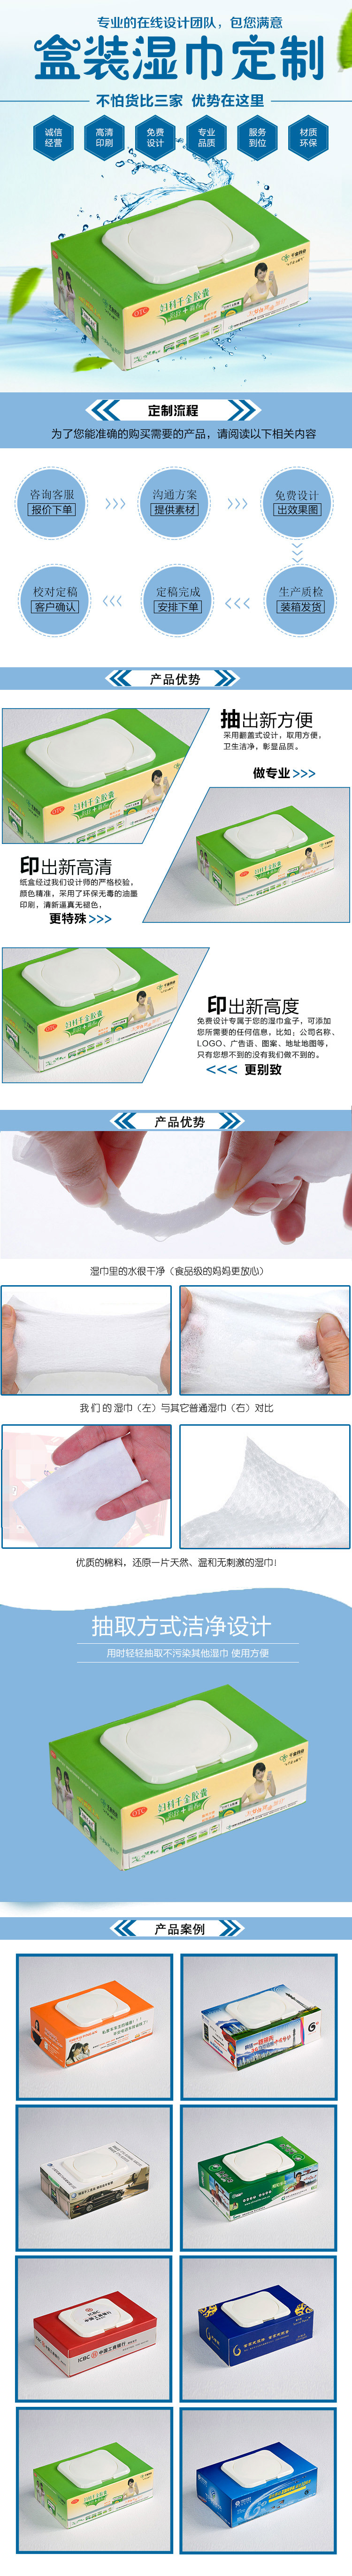 千金藥業濕紙巾.jpg